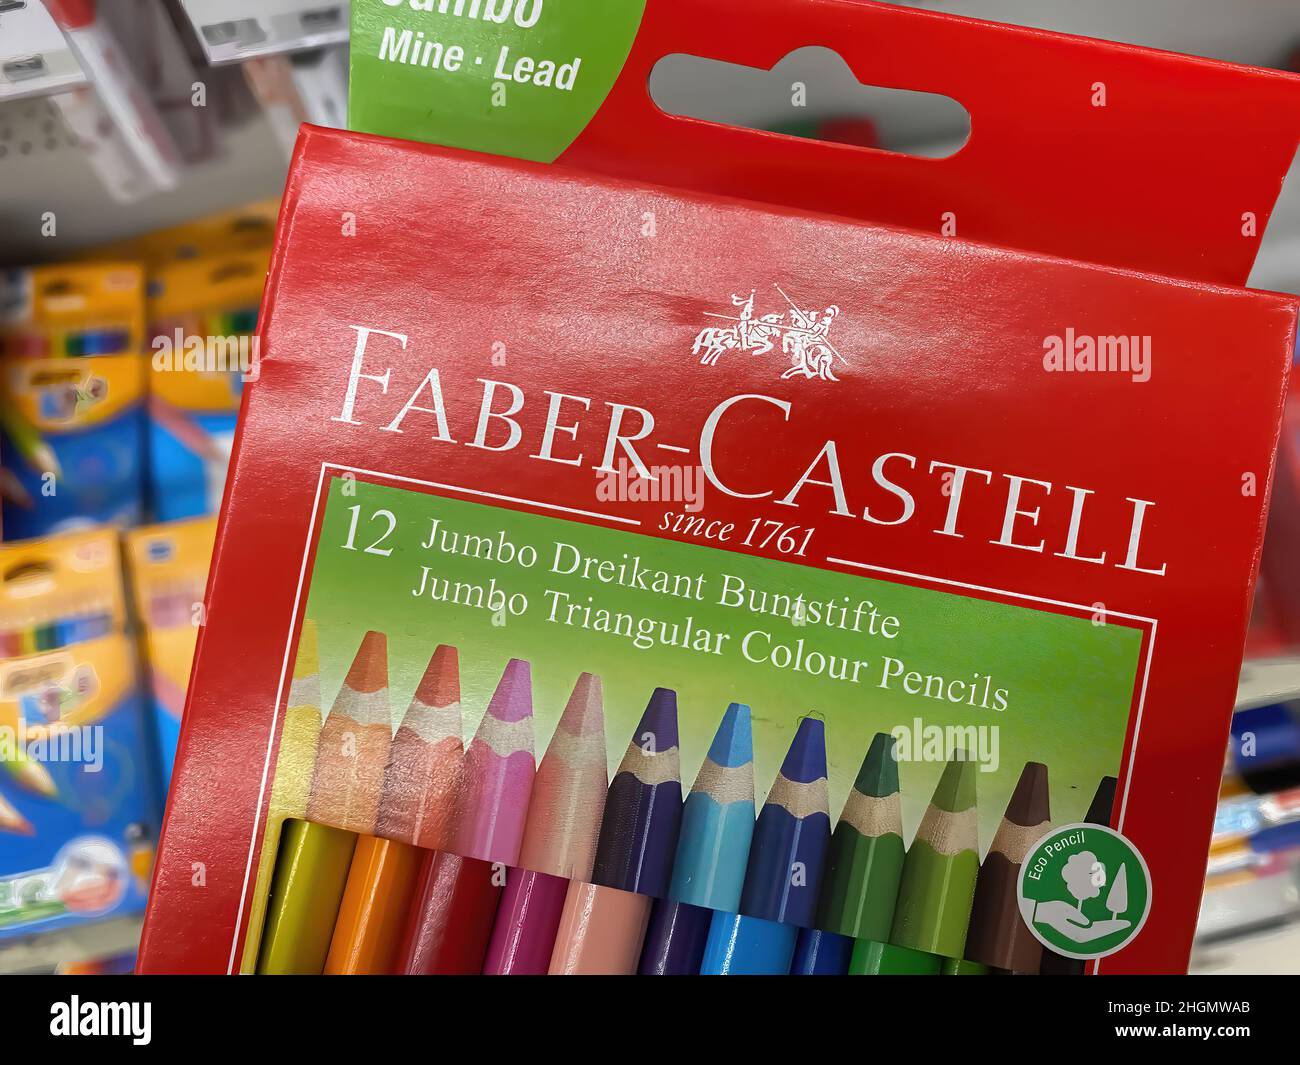 Viersen, Allemagne - janvier 9.2022: Gros plan du paquet fafer castell crayons de couleur dans le magasin allemand (se concentrer sur la moitié inférieure du paquet) Banque D'Images